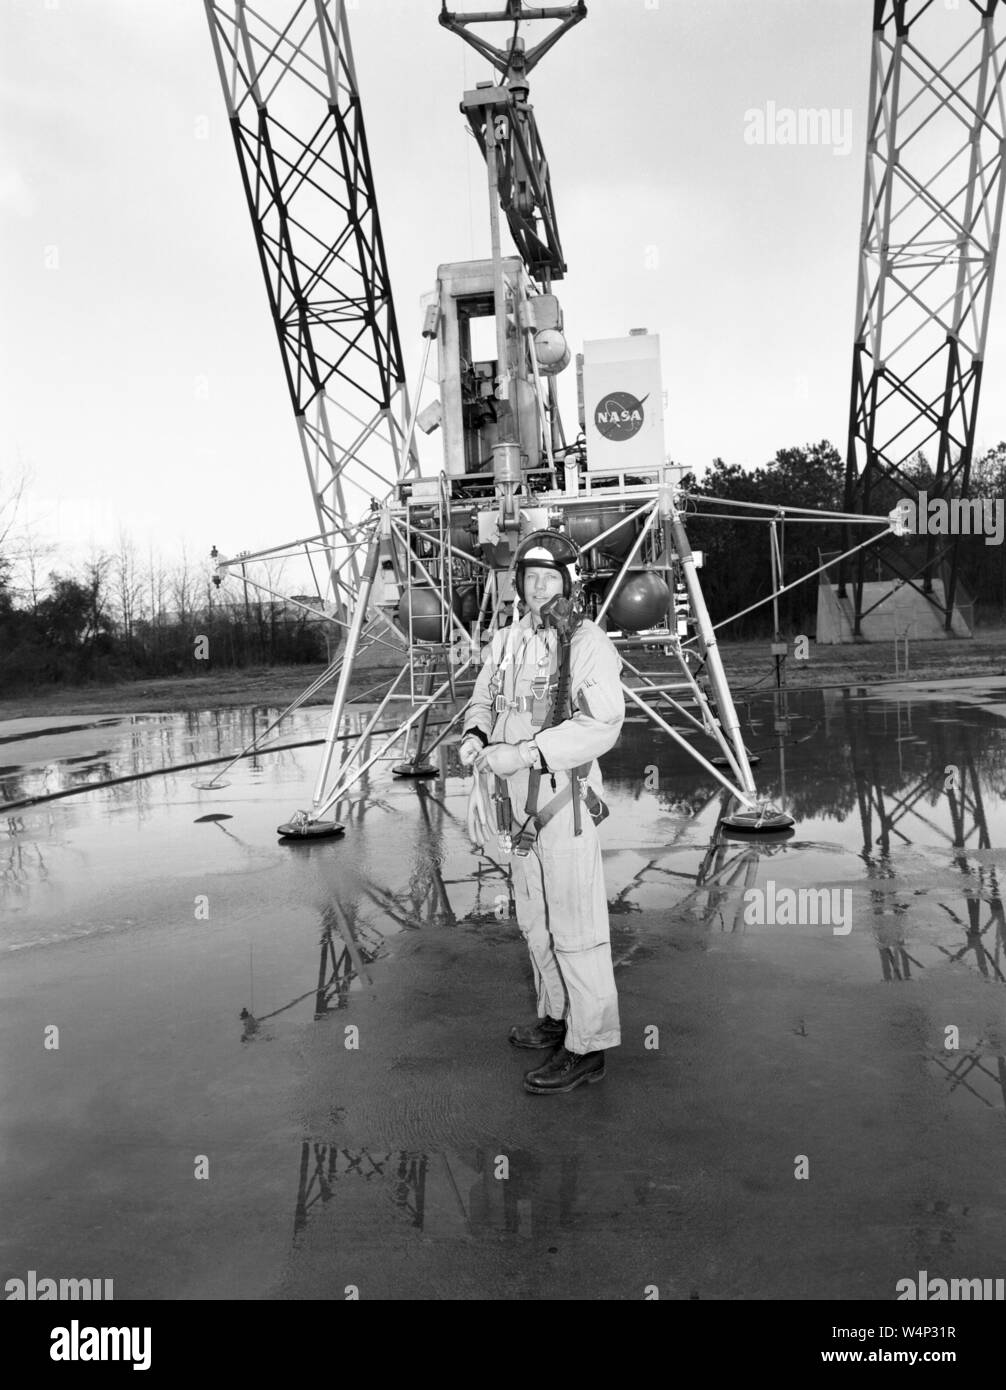 Neil Armstrong si erge con attrezzature all'atterraggio lunare di Ricerca (LLRF) presso il Langley Research Center di Hampton, Virginia, 12 febbraio 1969. Immagine cortesia Nazionale Aeronautica e Spaziale Administration (NASA). () Foto Stock